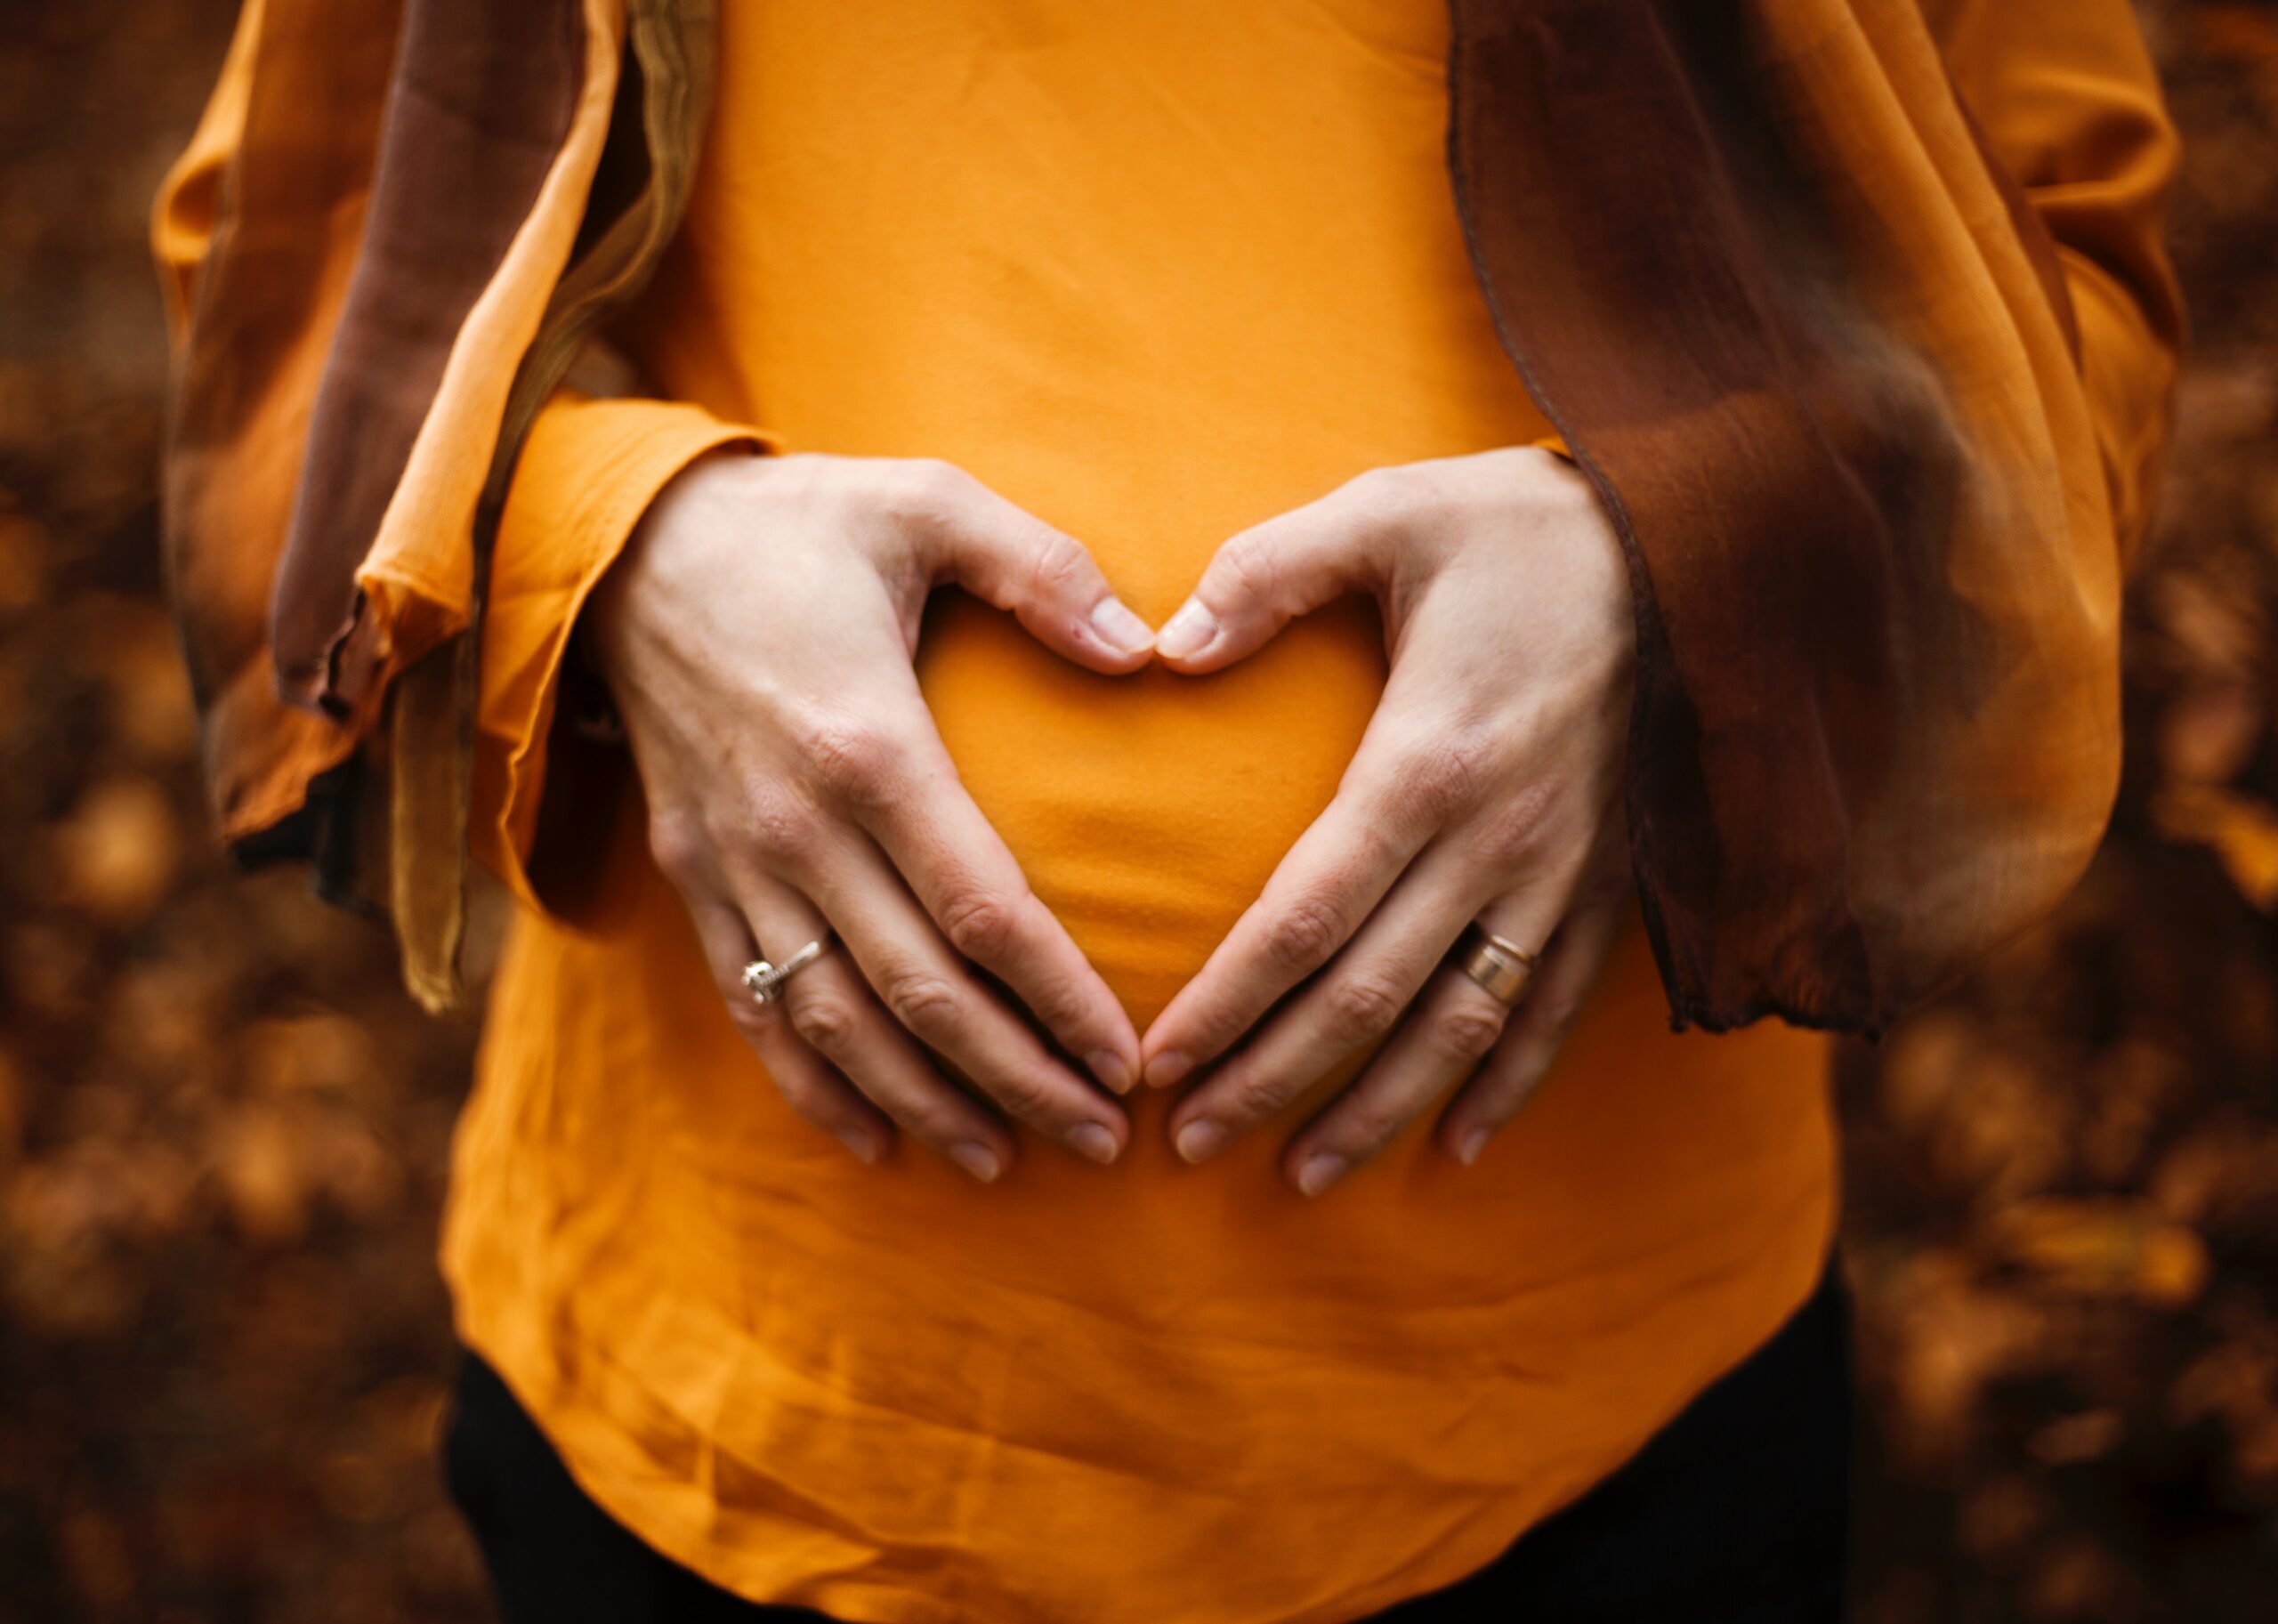 Schwangerer Bauch mit Herz von Händen geformt